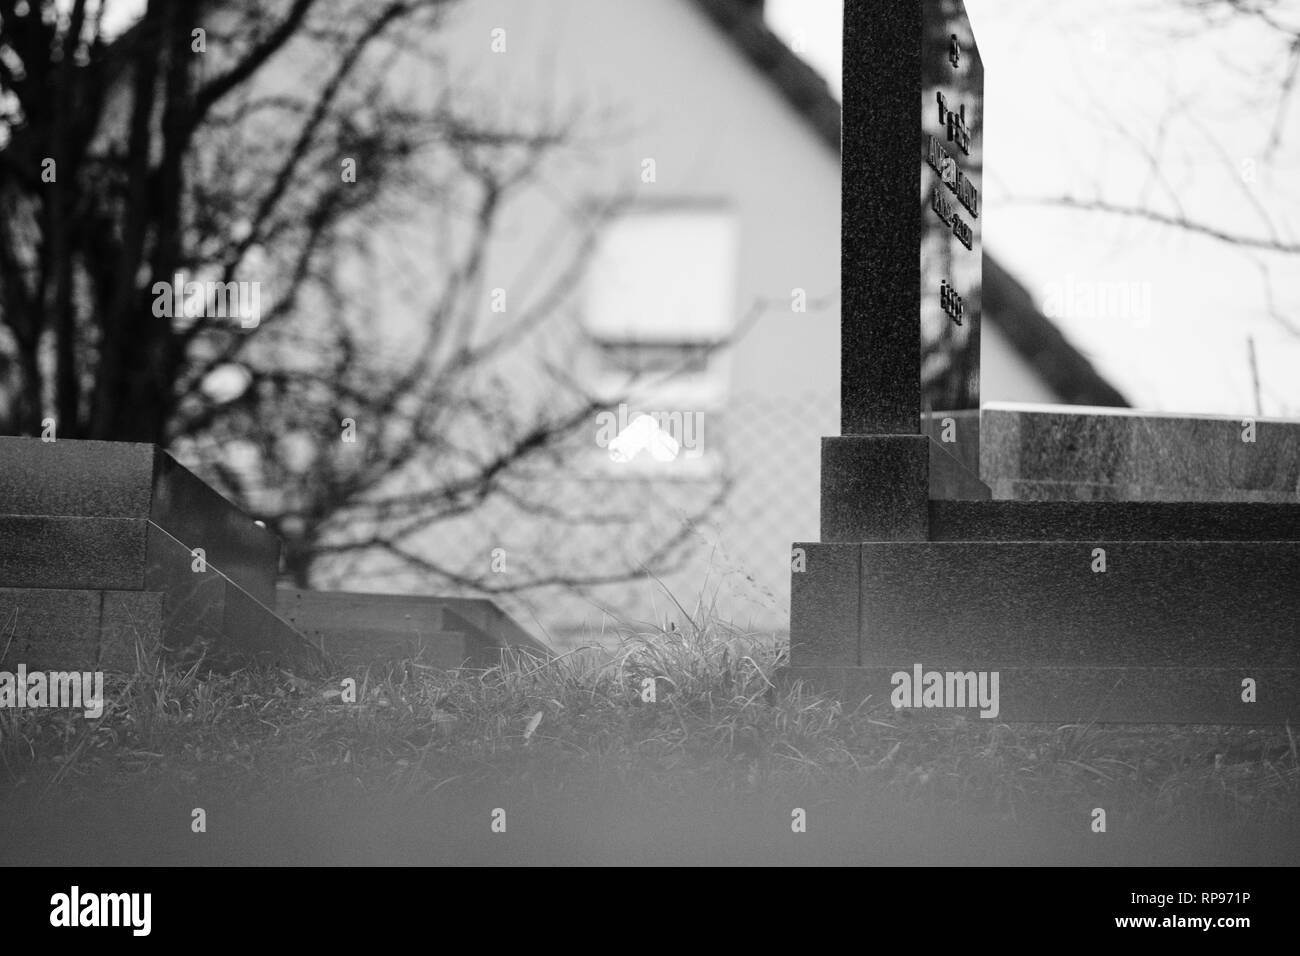 Il Menorah bokeh silhouette nella finestra di una casa vicino al soggetto ad atti vandalici tombe con simboli nazisti in blu spray-dipinte sulle tombe danneggiato - Cimitero Ebraico in Quatzenheim vicino a Strasburgo . Foto Stock